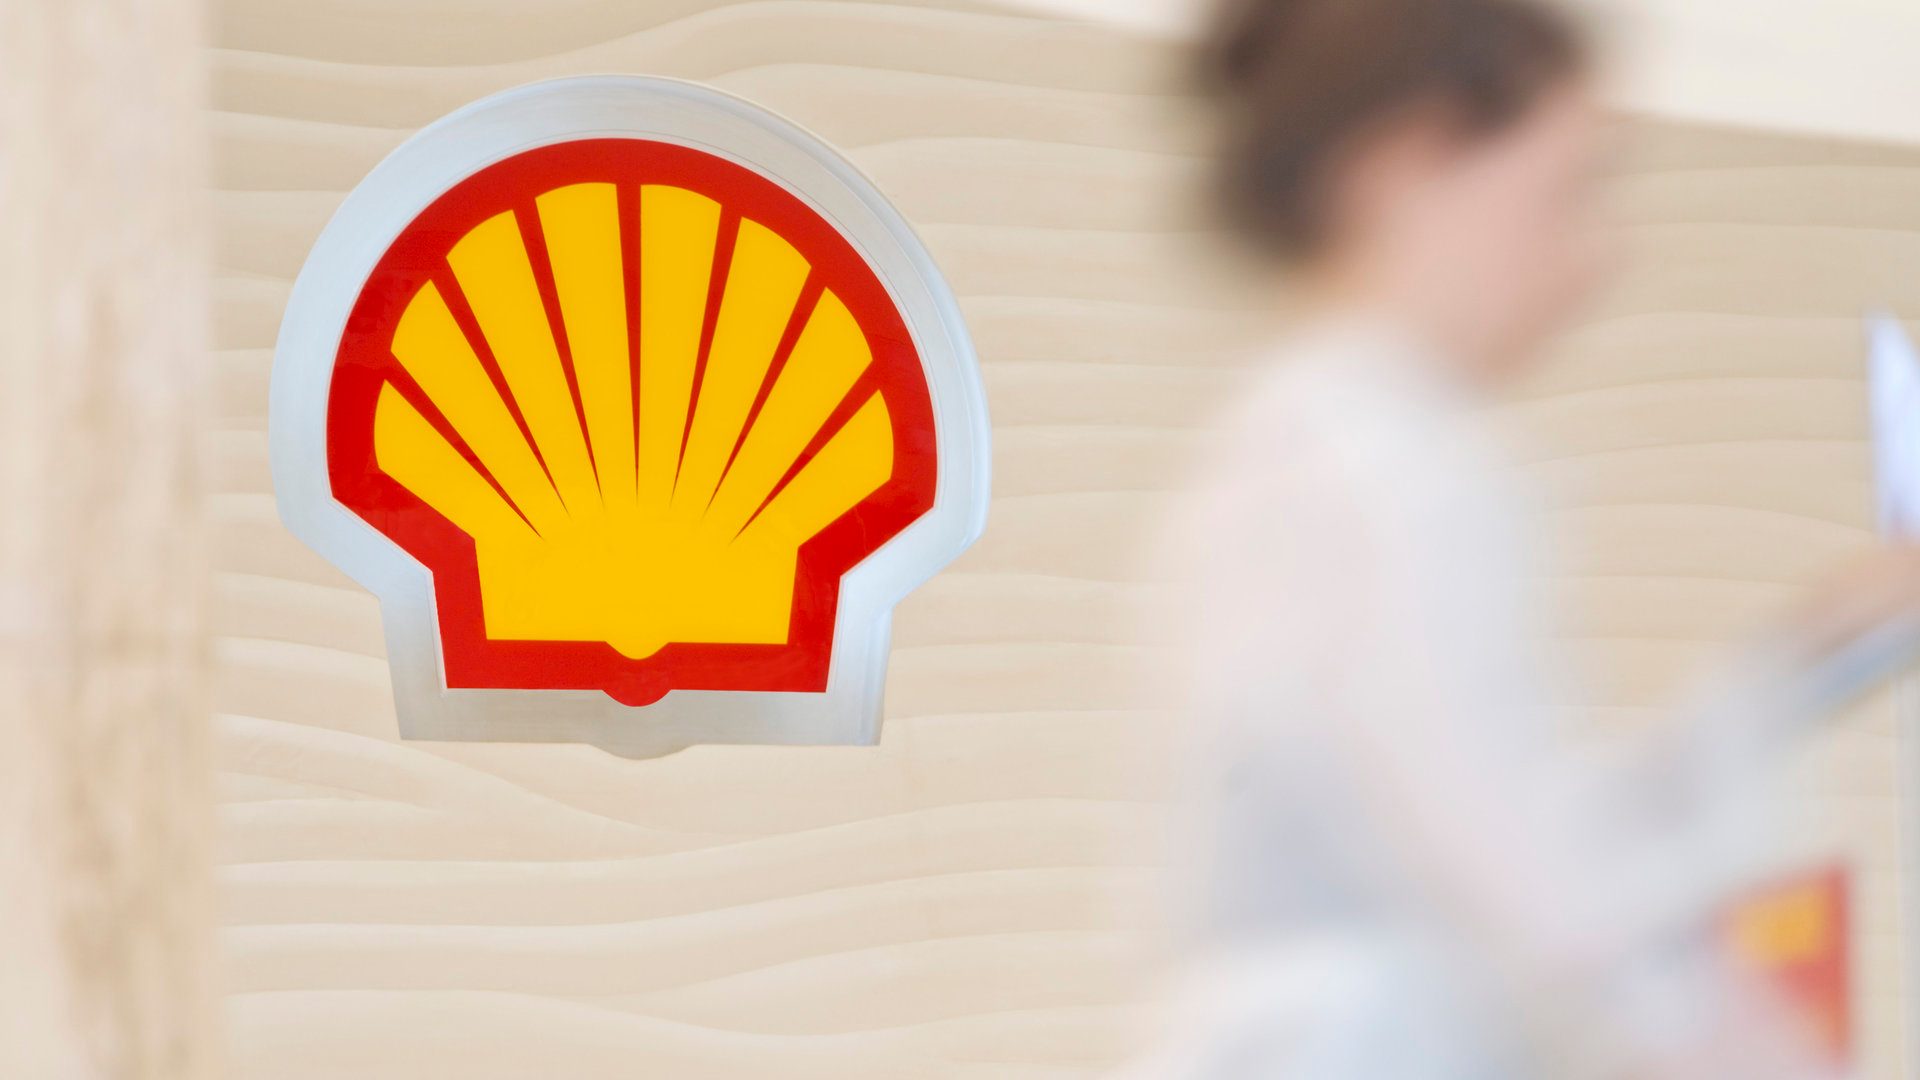 Shell expresa su interés de seguir invirtiendo y explorar nuevas áreas hidrocarburíferas